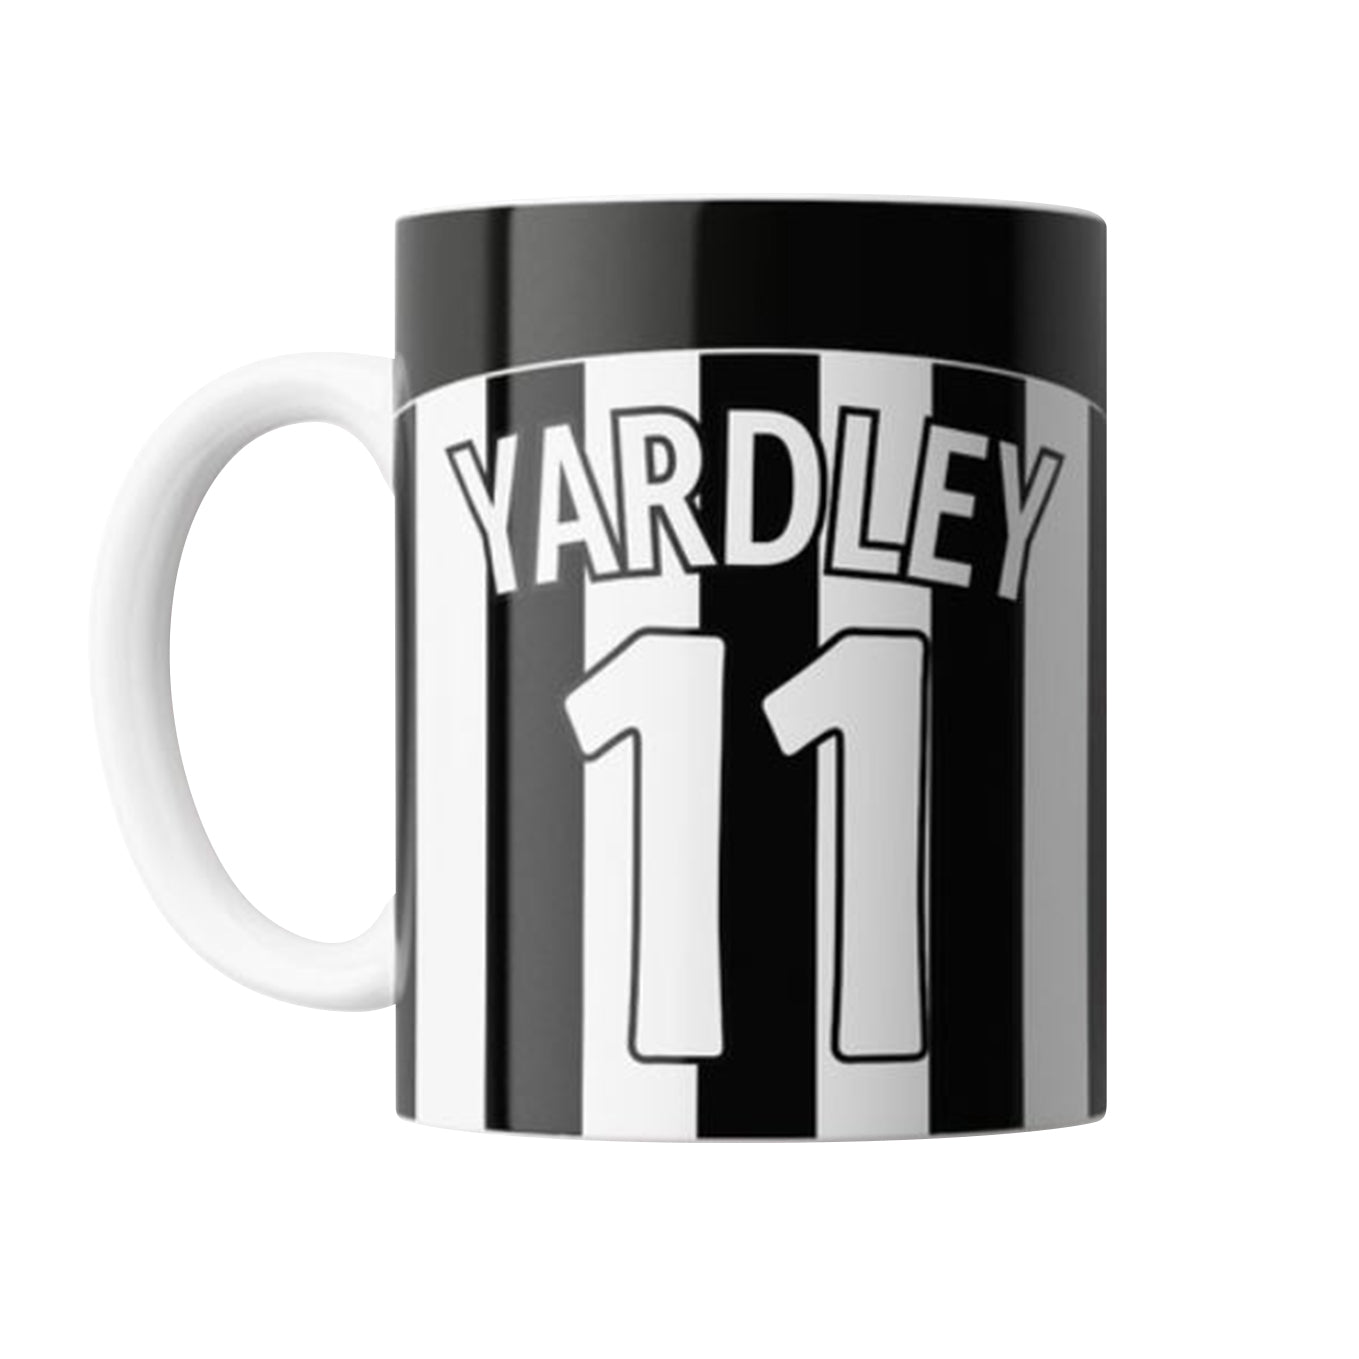 SMFC Yardley 11 Mug